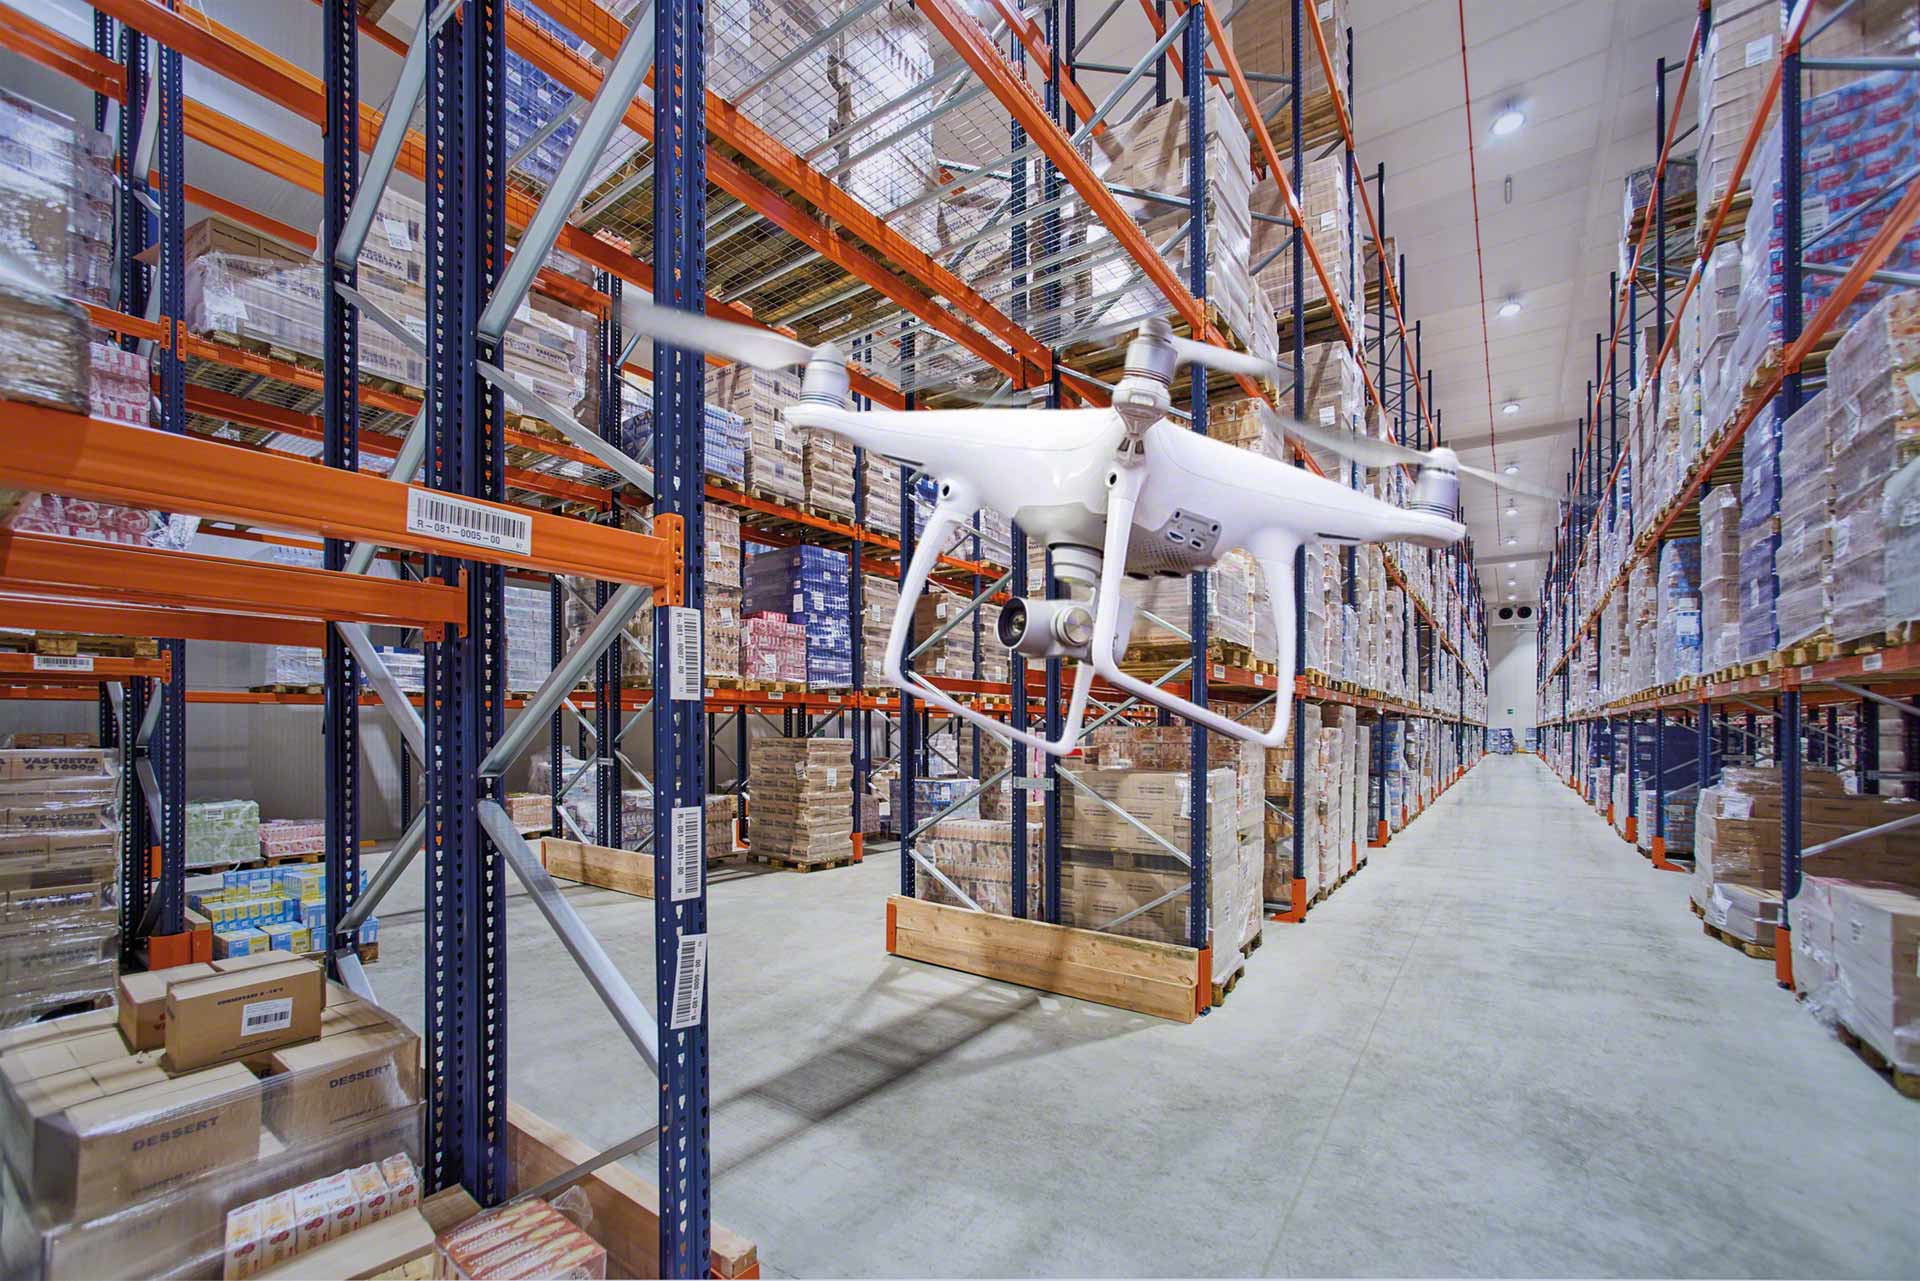 Gérer l'inventaire à l'aide de drones permet d'assurer un suivi efficace des stocks